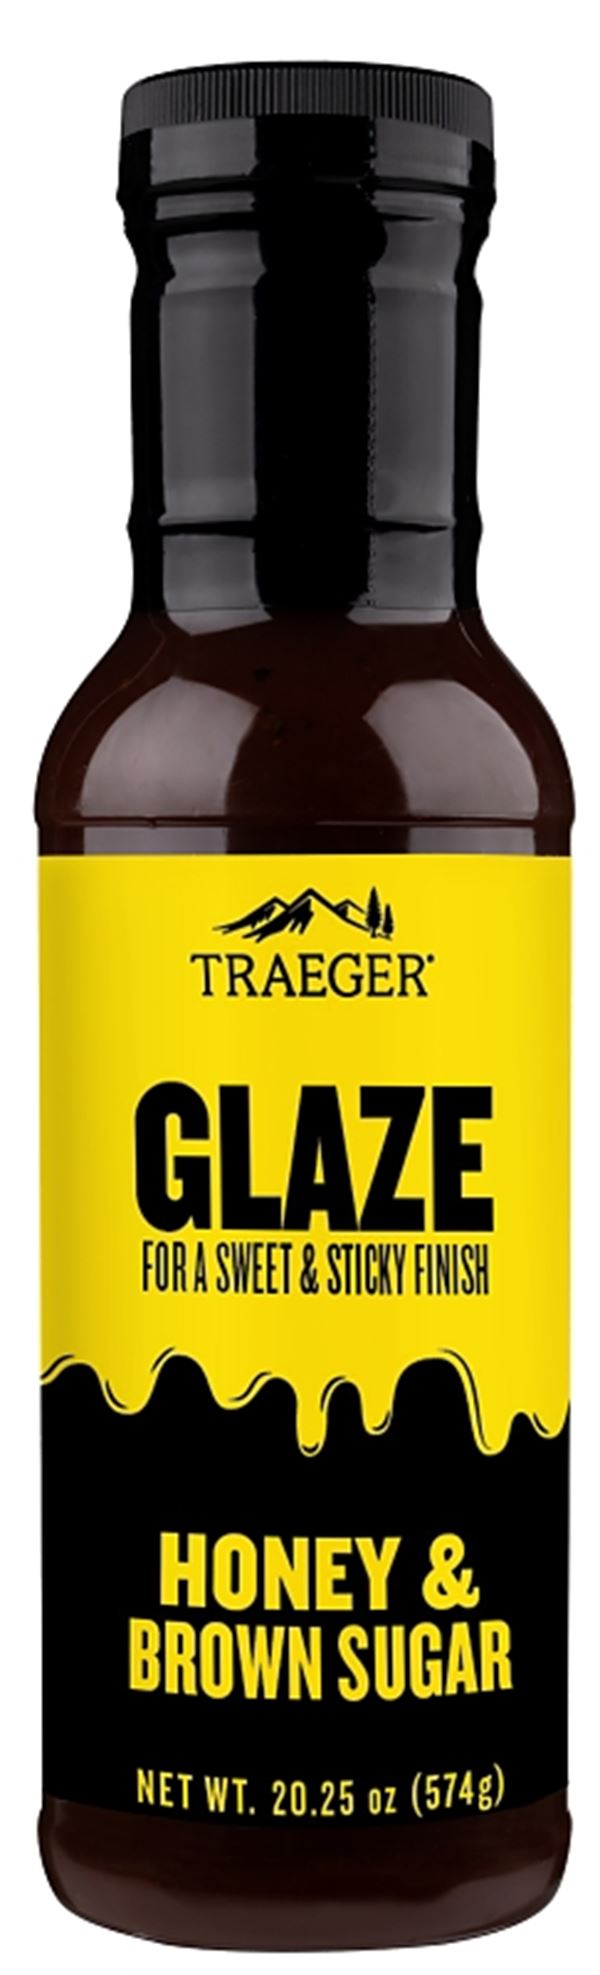 Traeger GLZ001 Barbeque Glaze, Brown Sugar, Honey Flavor, 12 oz Bottle  6 Pack